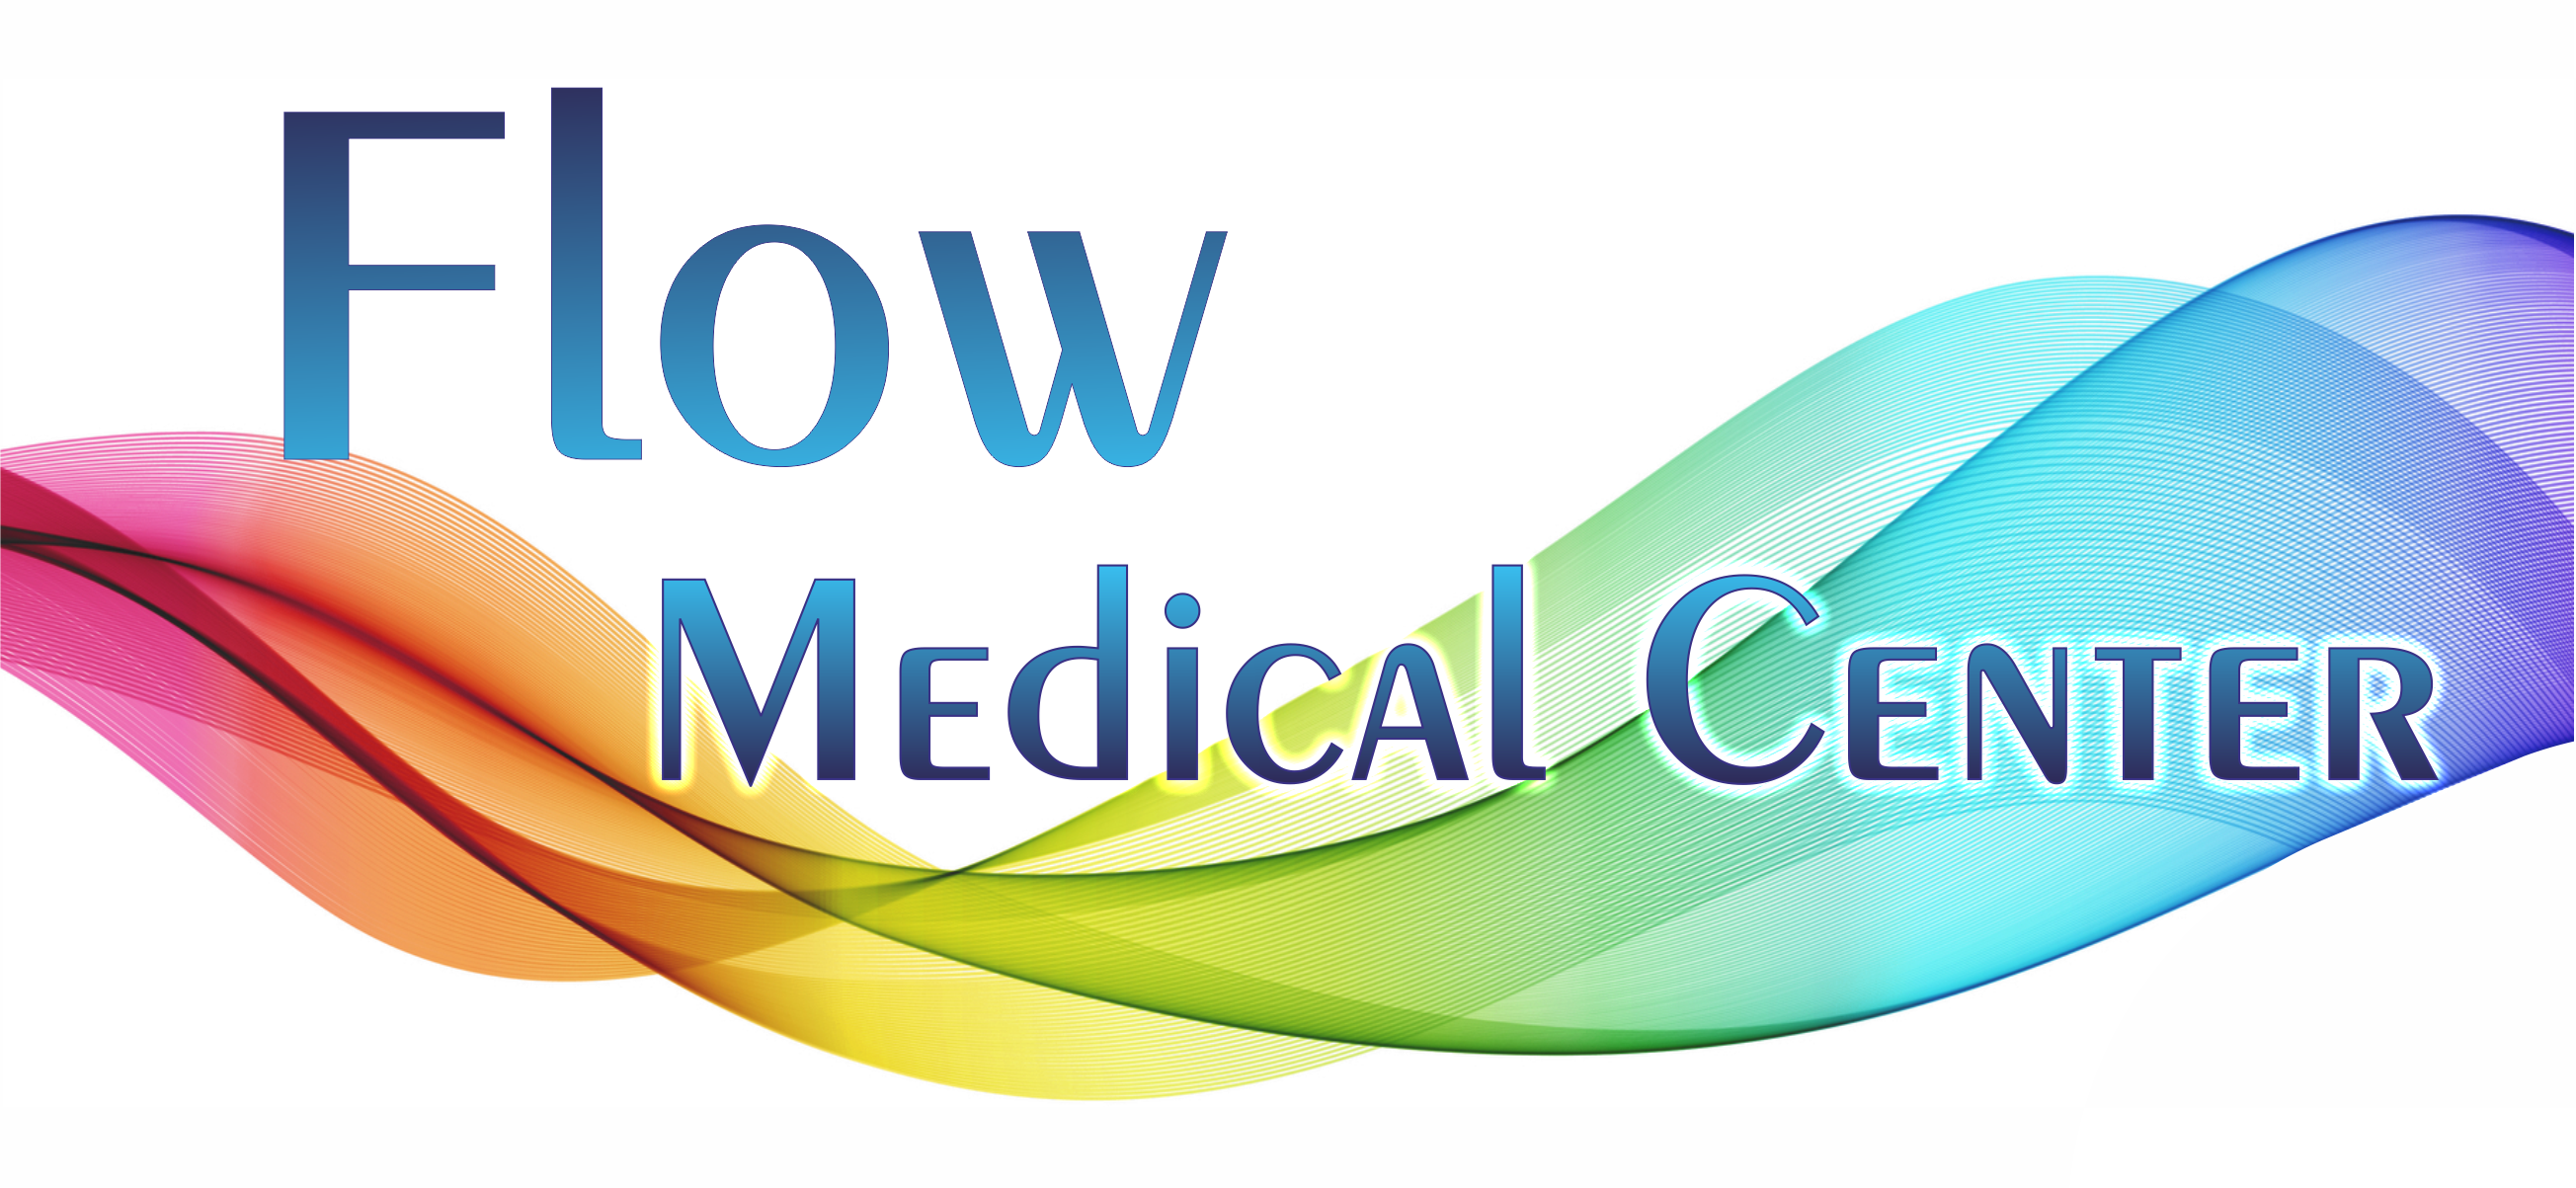 Flow Medical Center - Flow Medical Center